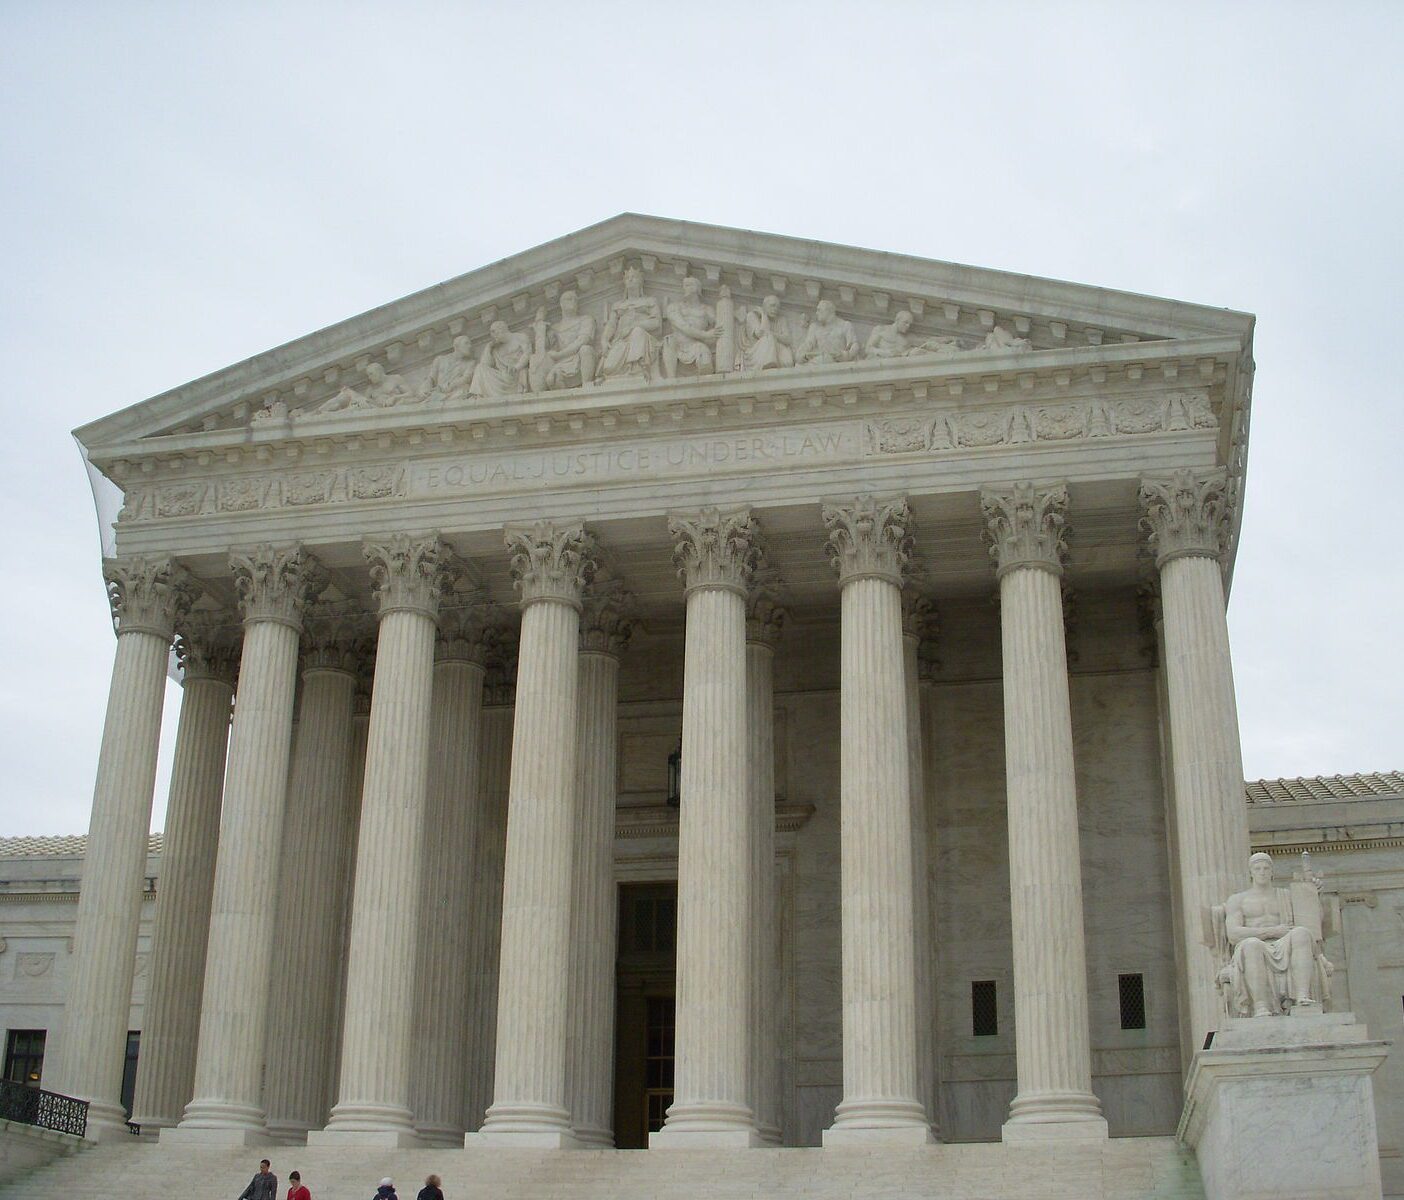 Supreme Court building in Washington D.C.